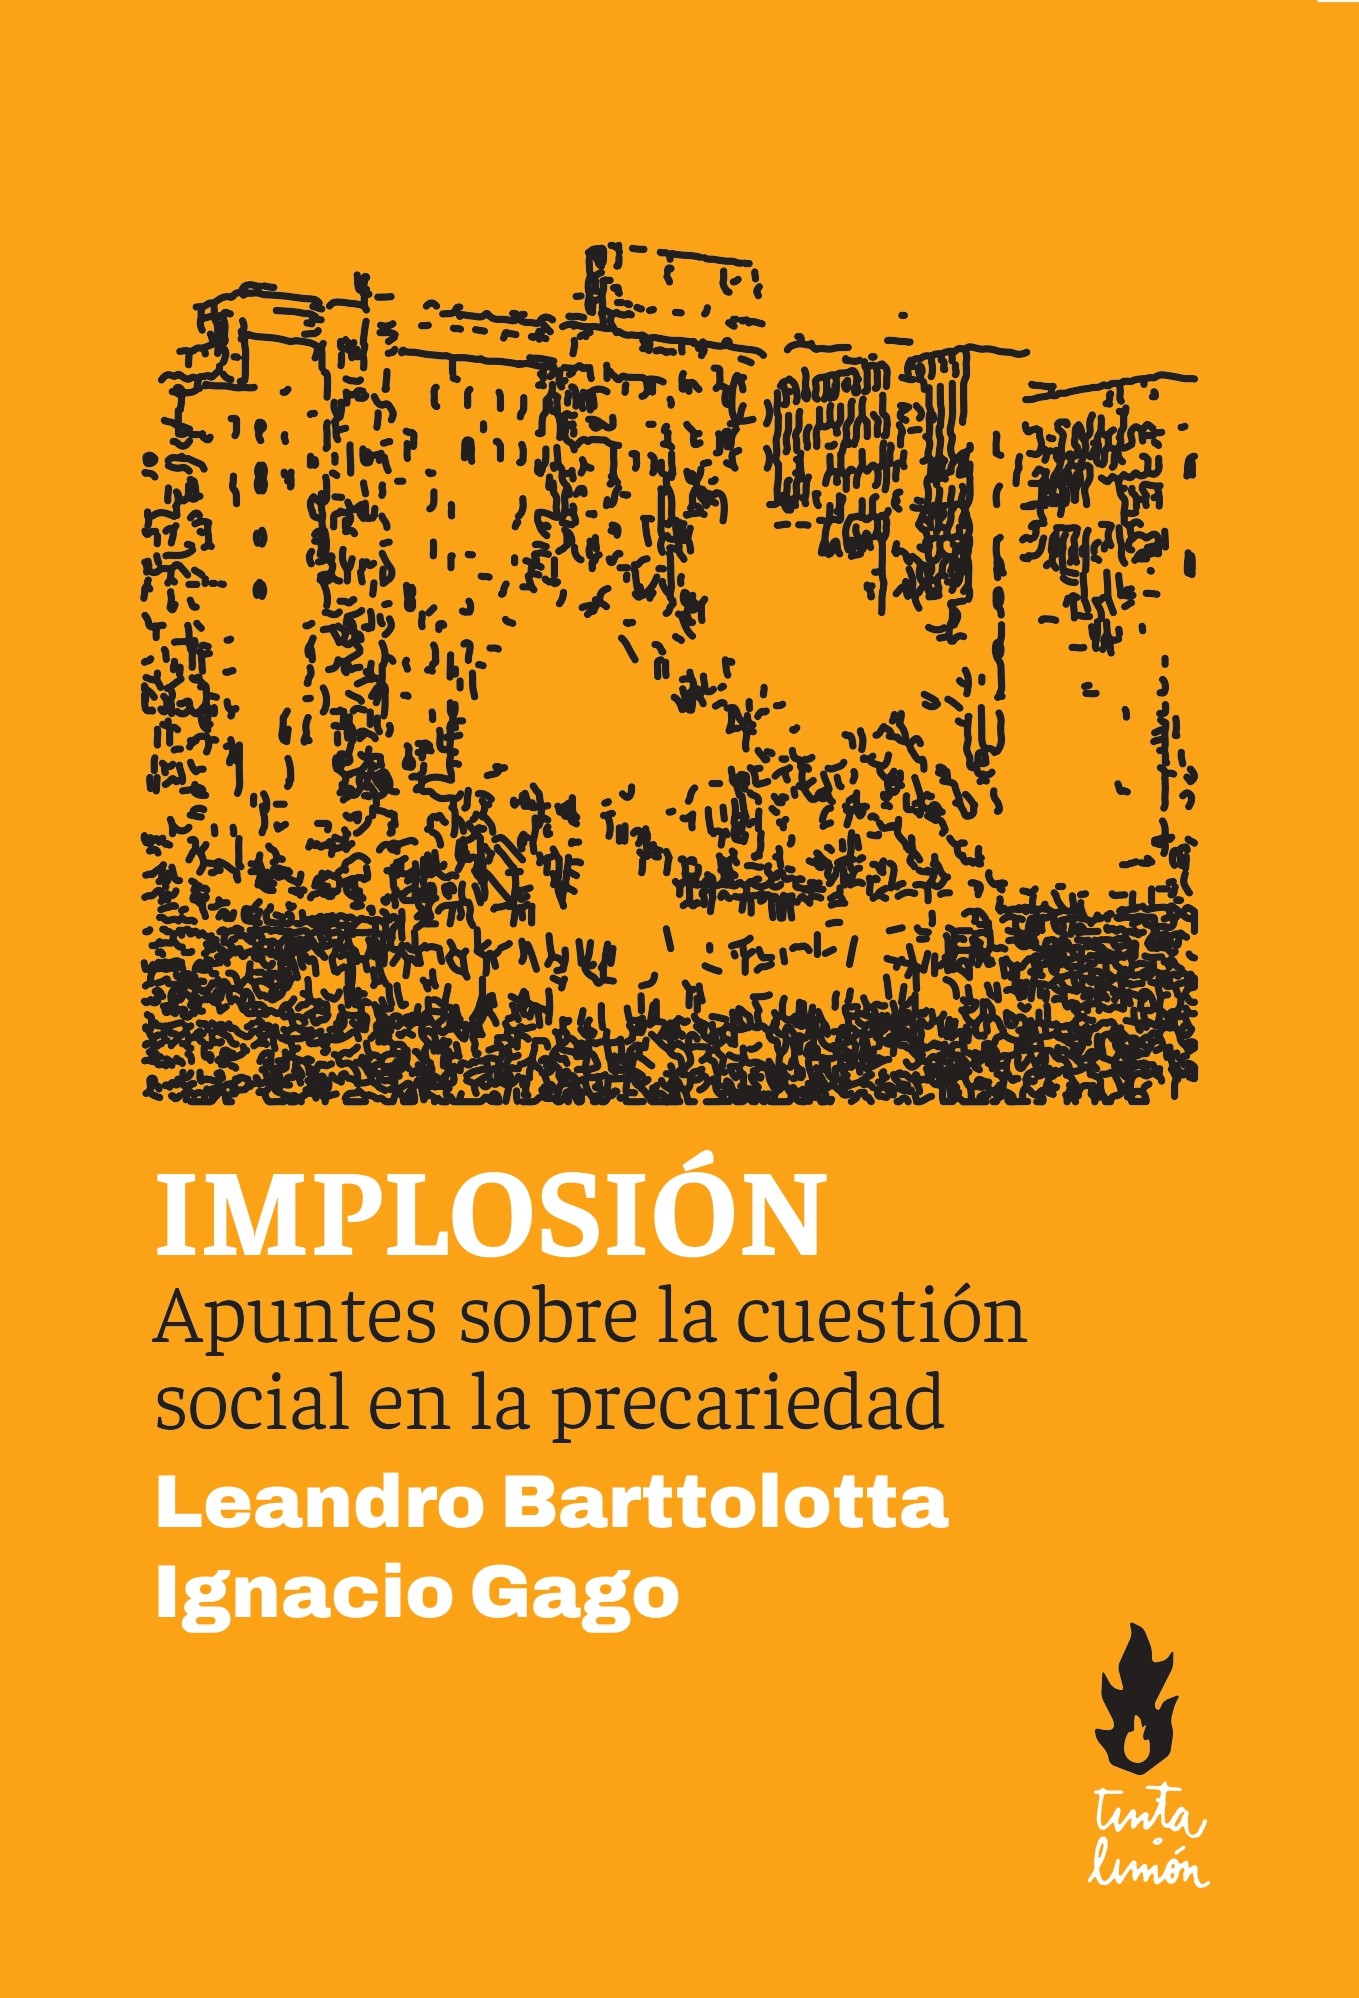 Implosión - Leandro Barttolotta | Ignacio Gago